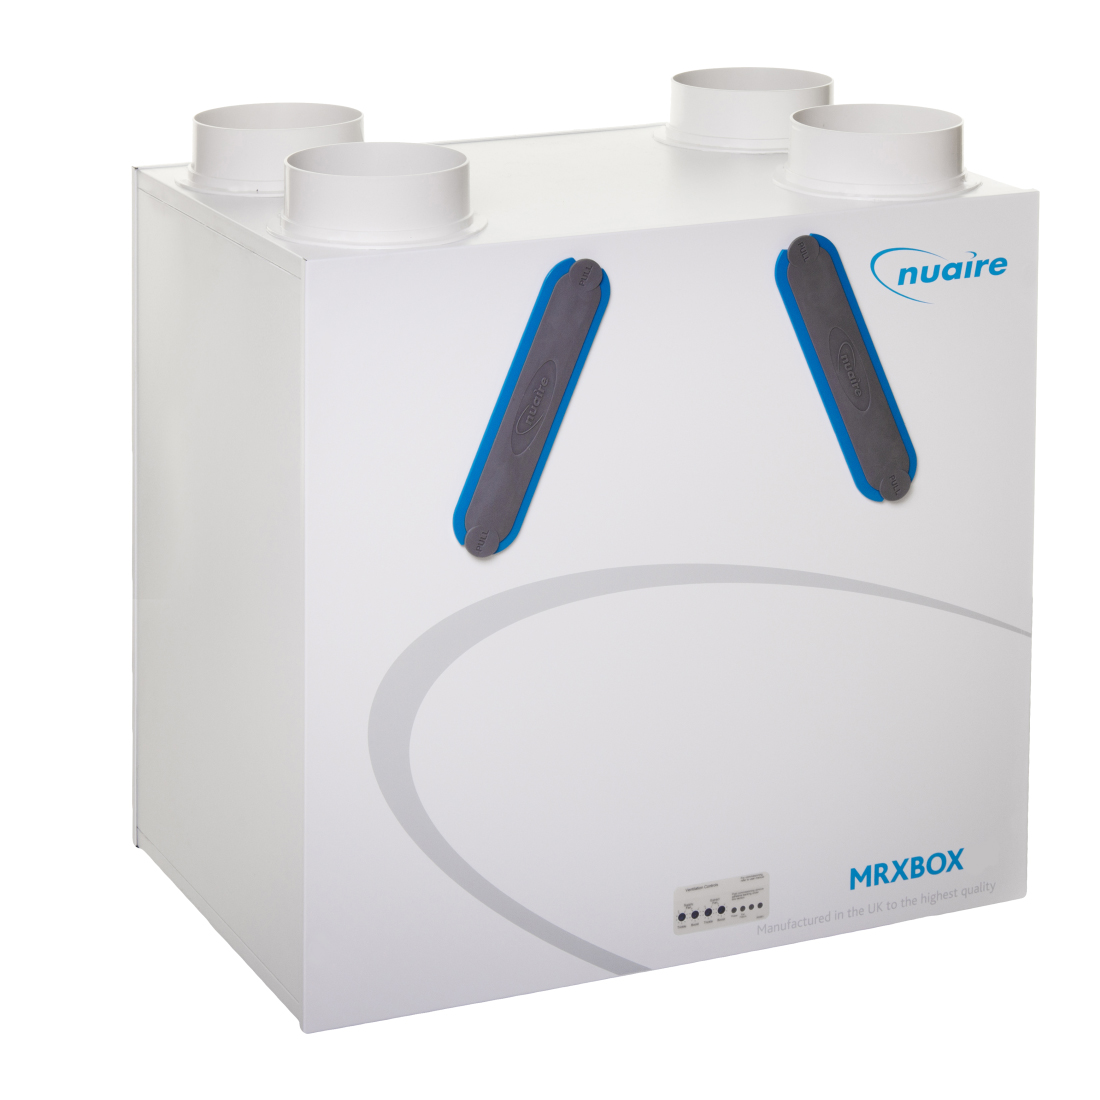 Nuaire MRXBOXAB-ECO5 Heat Recovery System